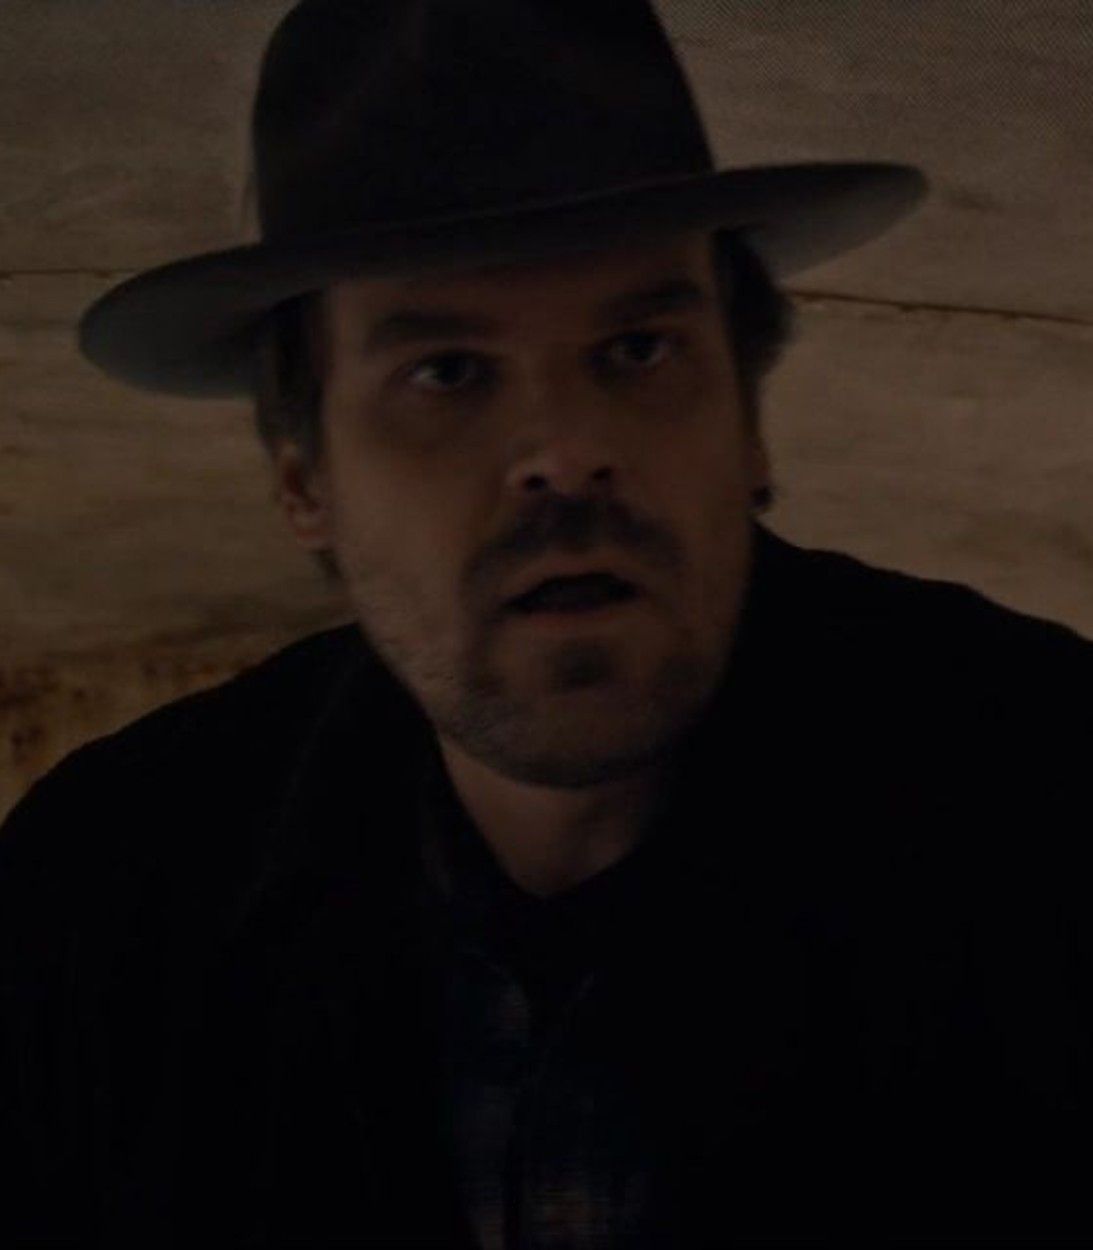 Jim Hopper in Stranger Things season one image pic vertical